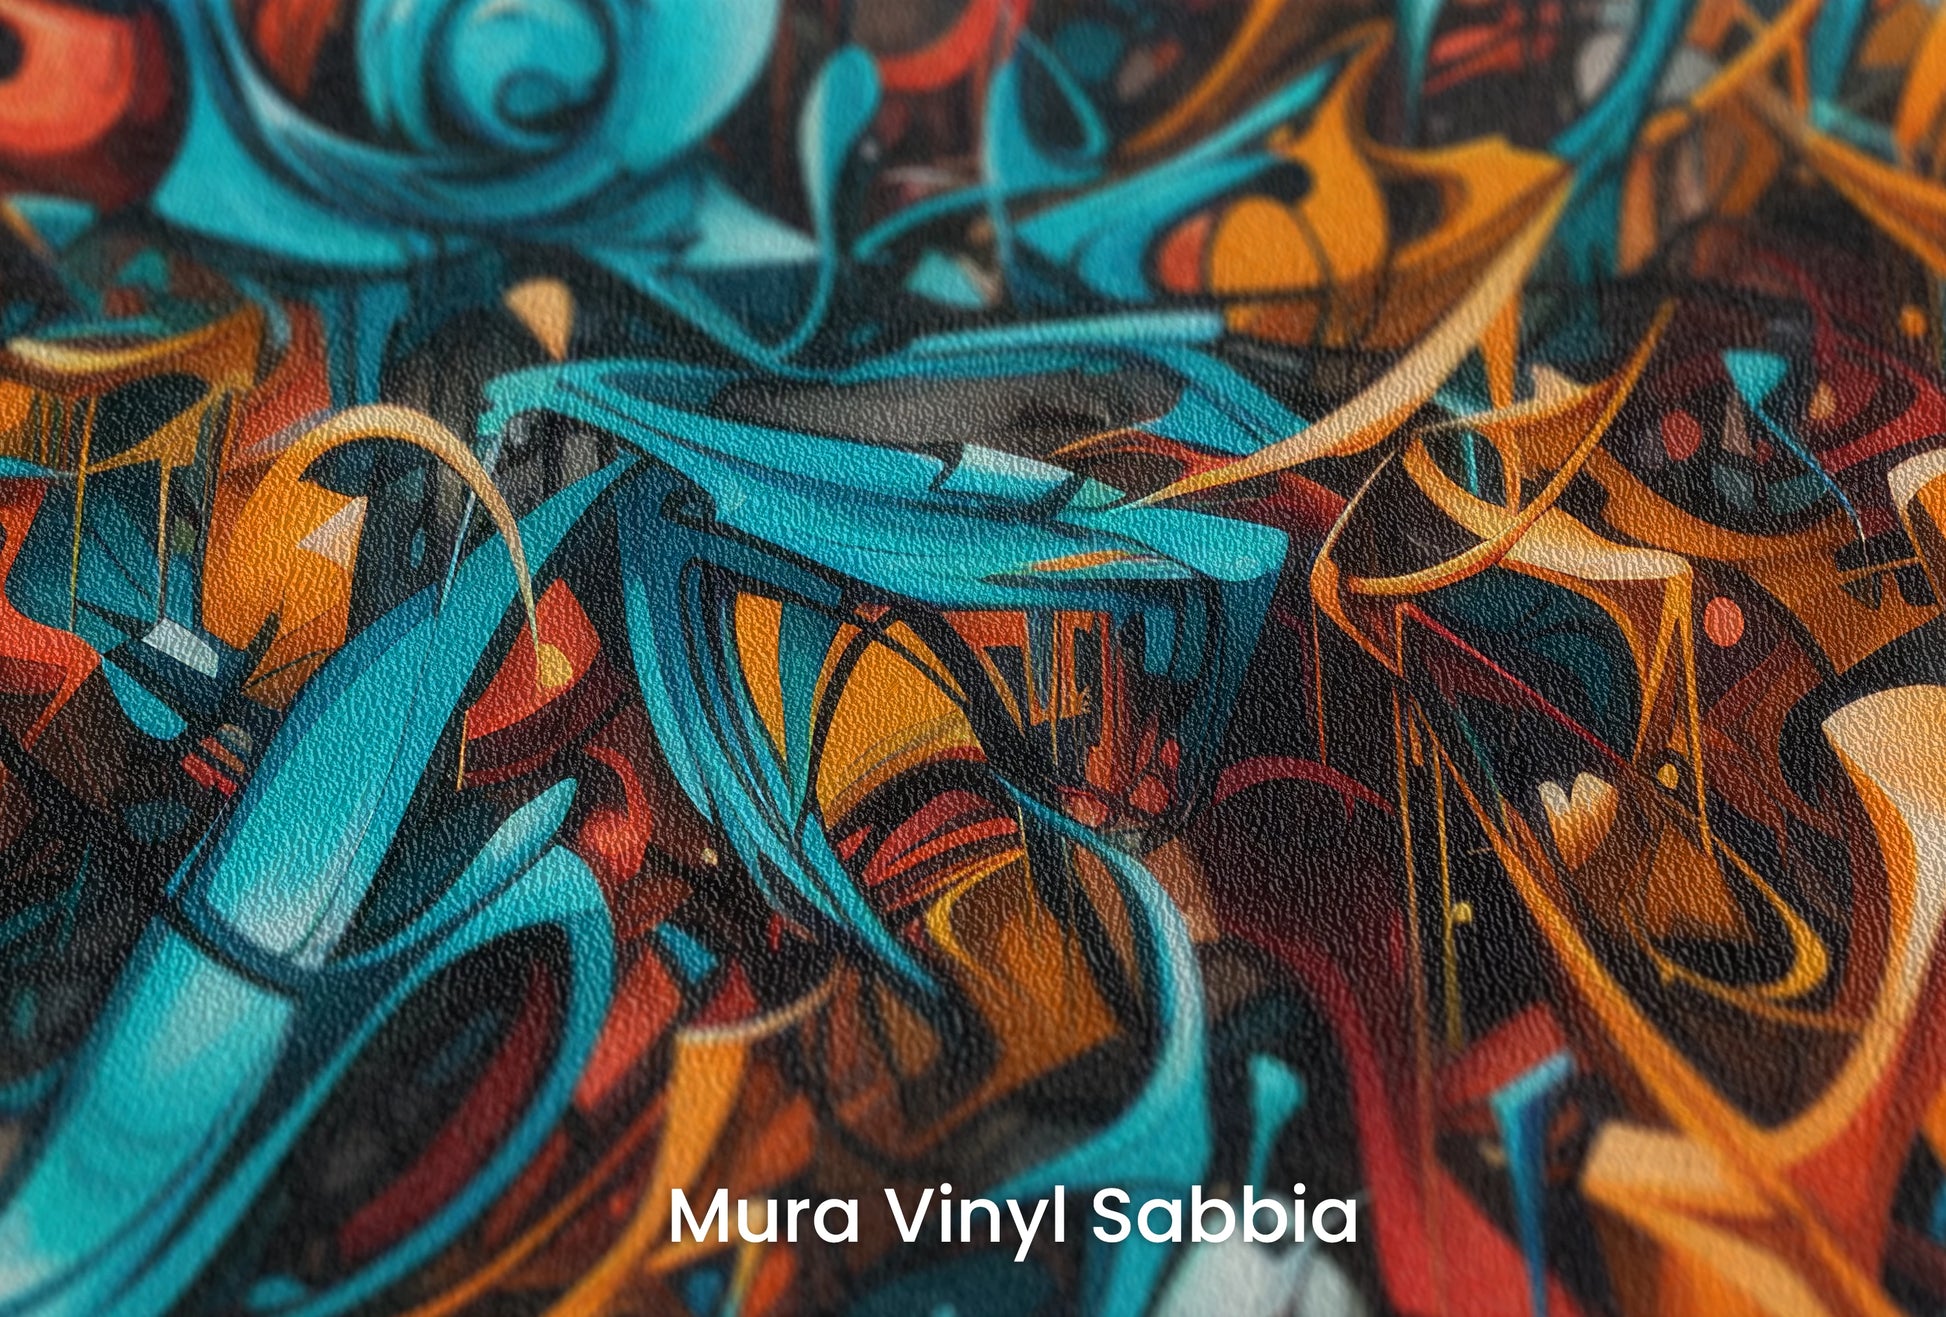 Zbliżenie na artystyczną fototapetę o nazwie Abstract Turmoil na podłożu Mura Vinyl Sabbia struktura grubego ziarna piasku.